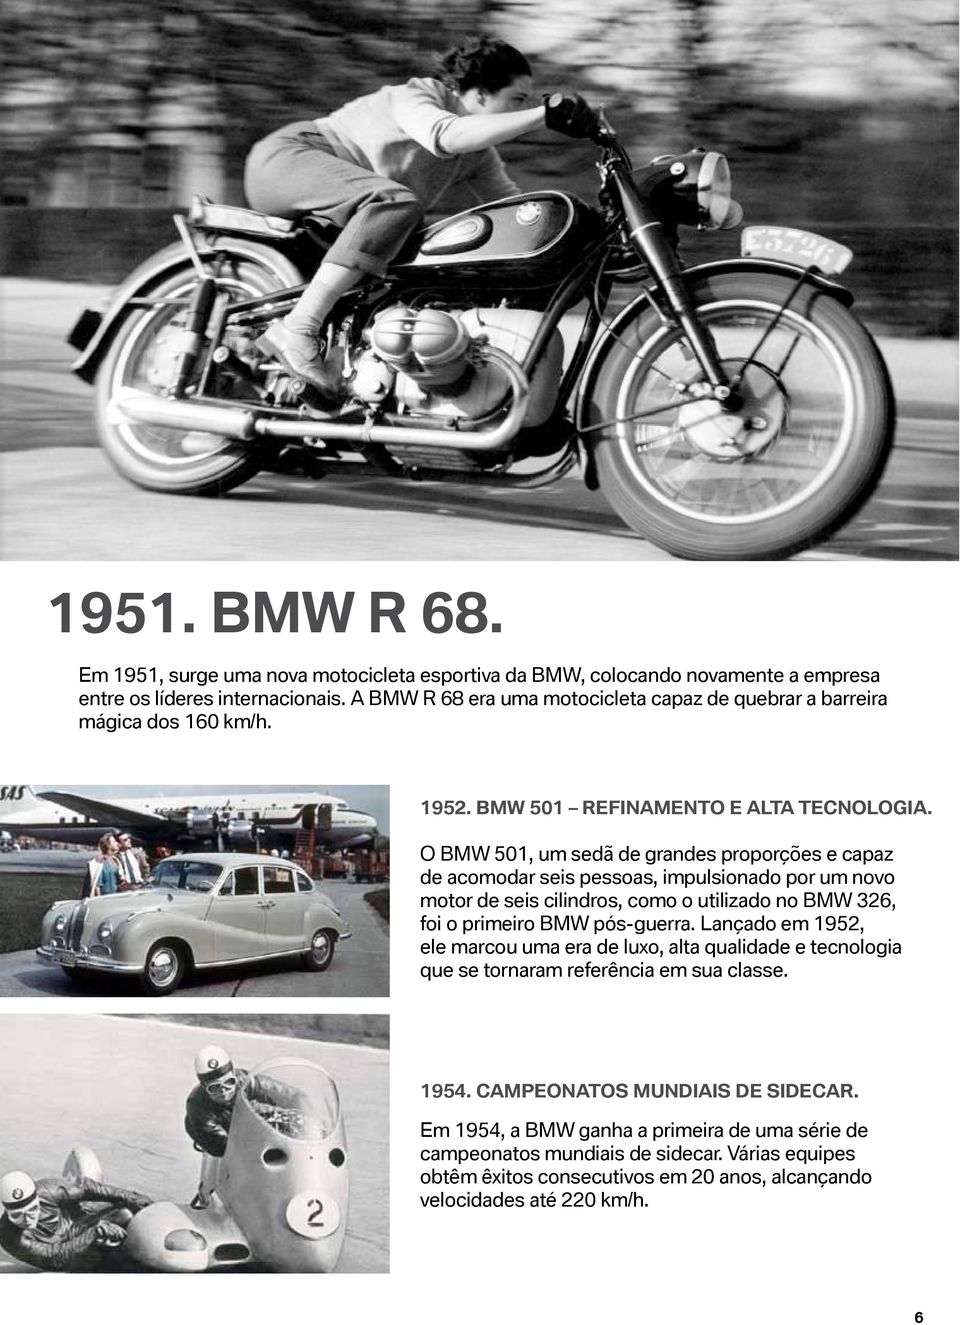 O BMW 501, um sedã de grandes proporções e capaz de acomodar seis pessoas, impulsionado por um novo motor de seis cilindros, como o utilizado no BMW 326, foi o primeiro BMW pós-guerra.